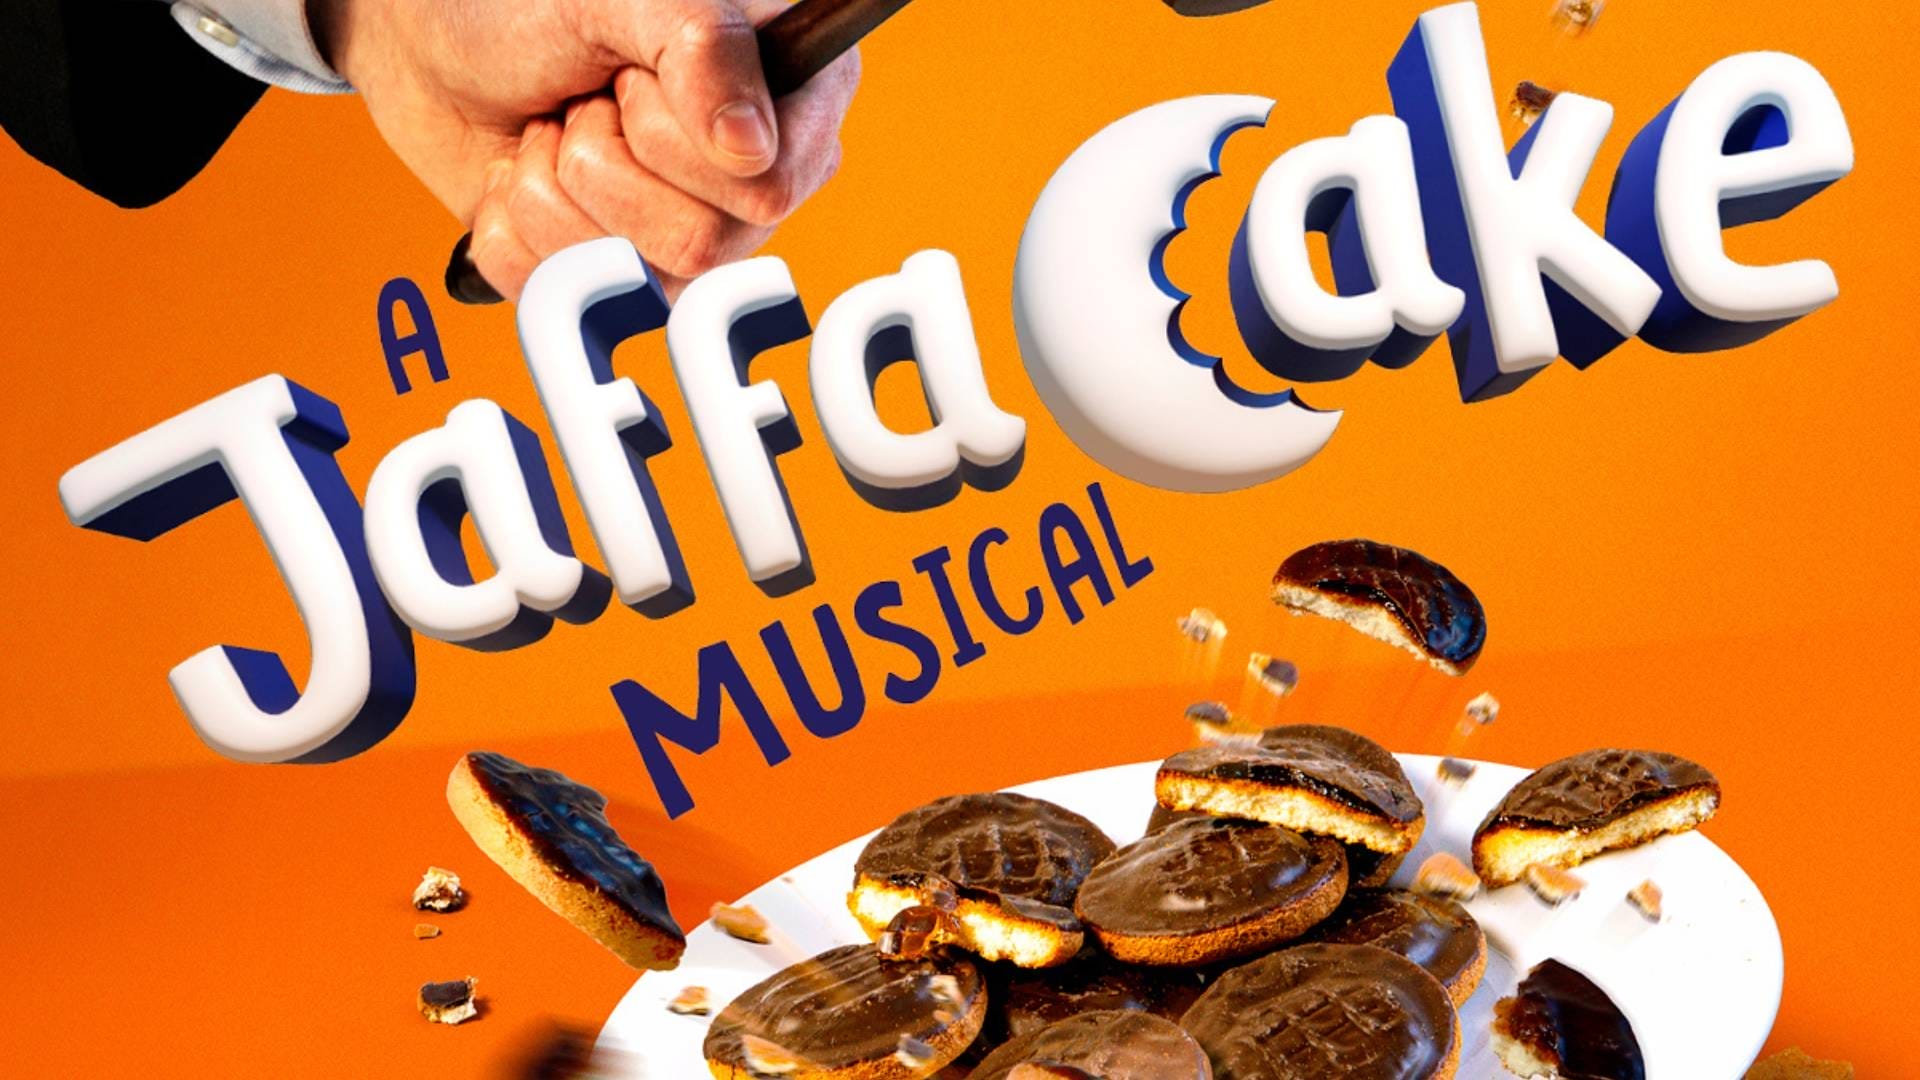 A Jaffa Cake Musical